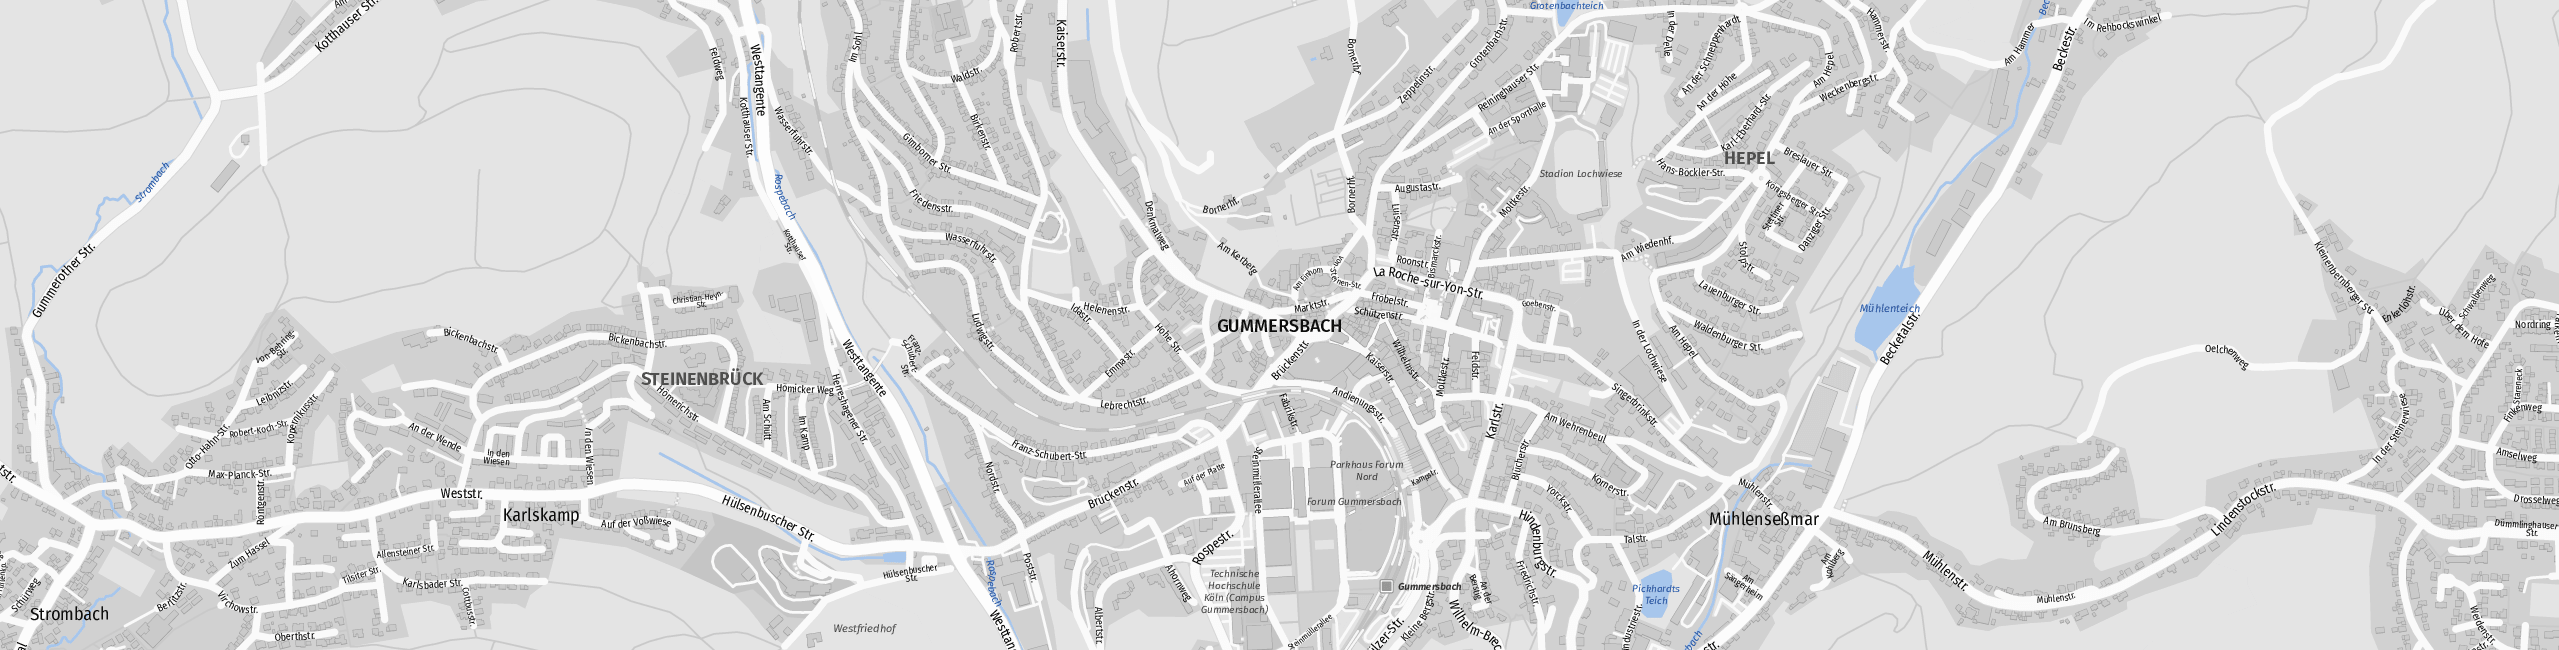 Stadtplan Gummersbach zum Downloaden.